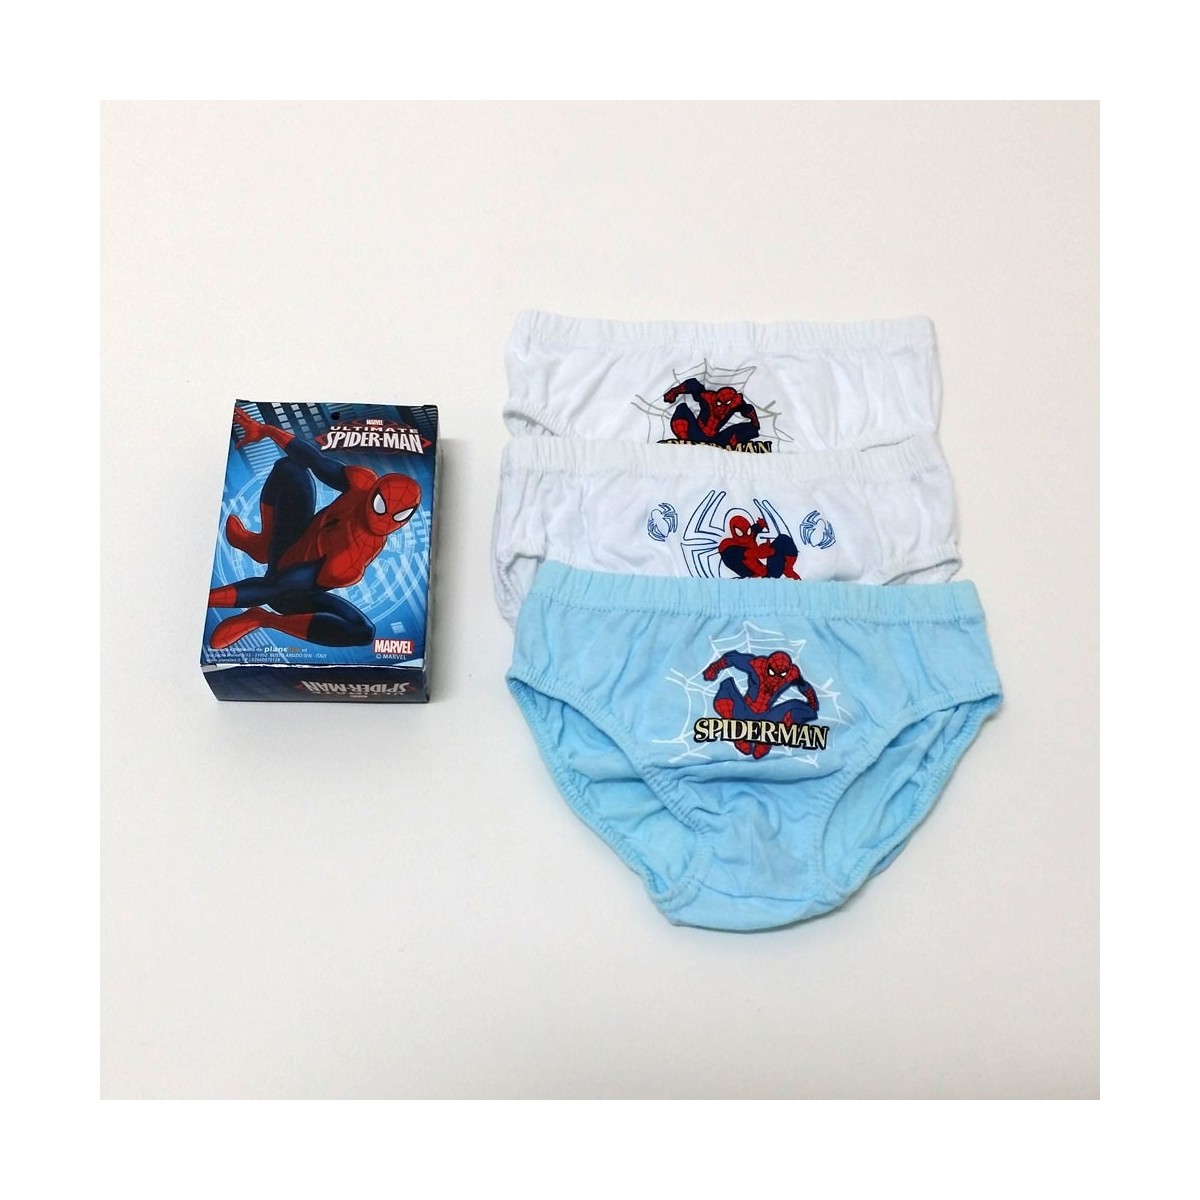 Marvel Spiderman Slip Bambino Intimo Bambini E Ragazzi Confezione da 5 14 Anni Mutande in Cotone 18 Mesi